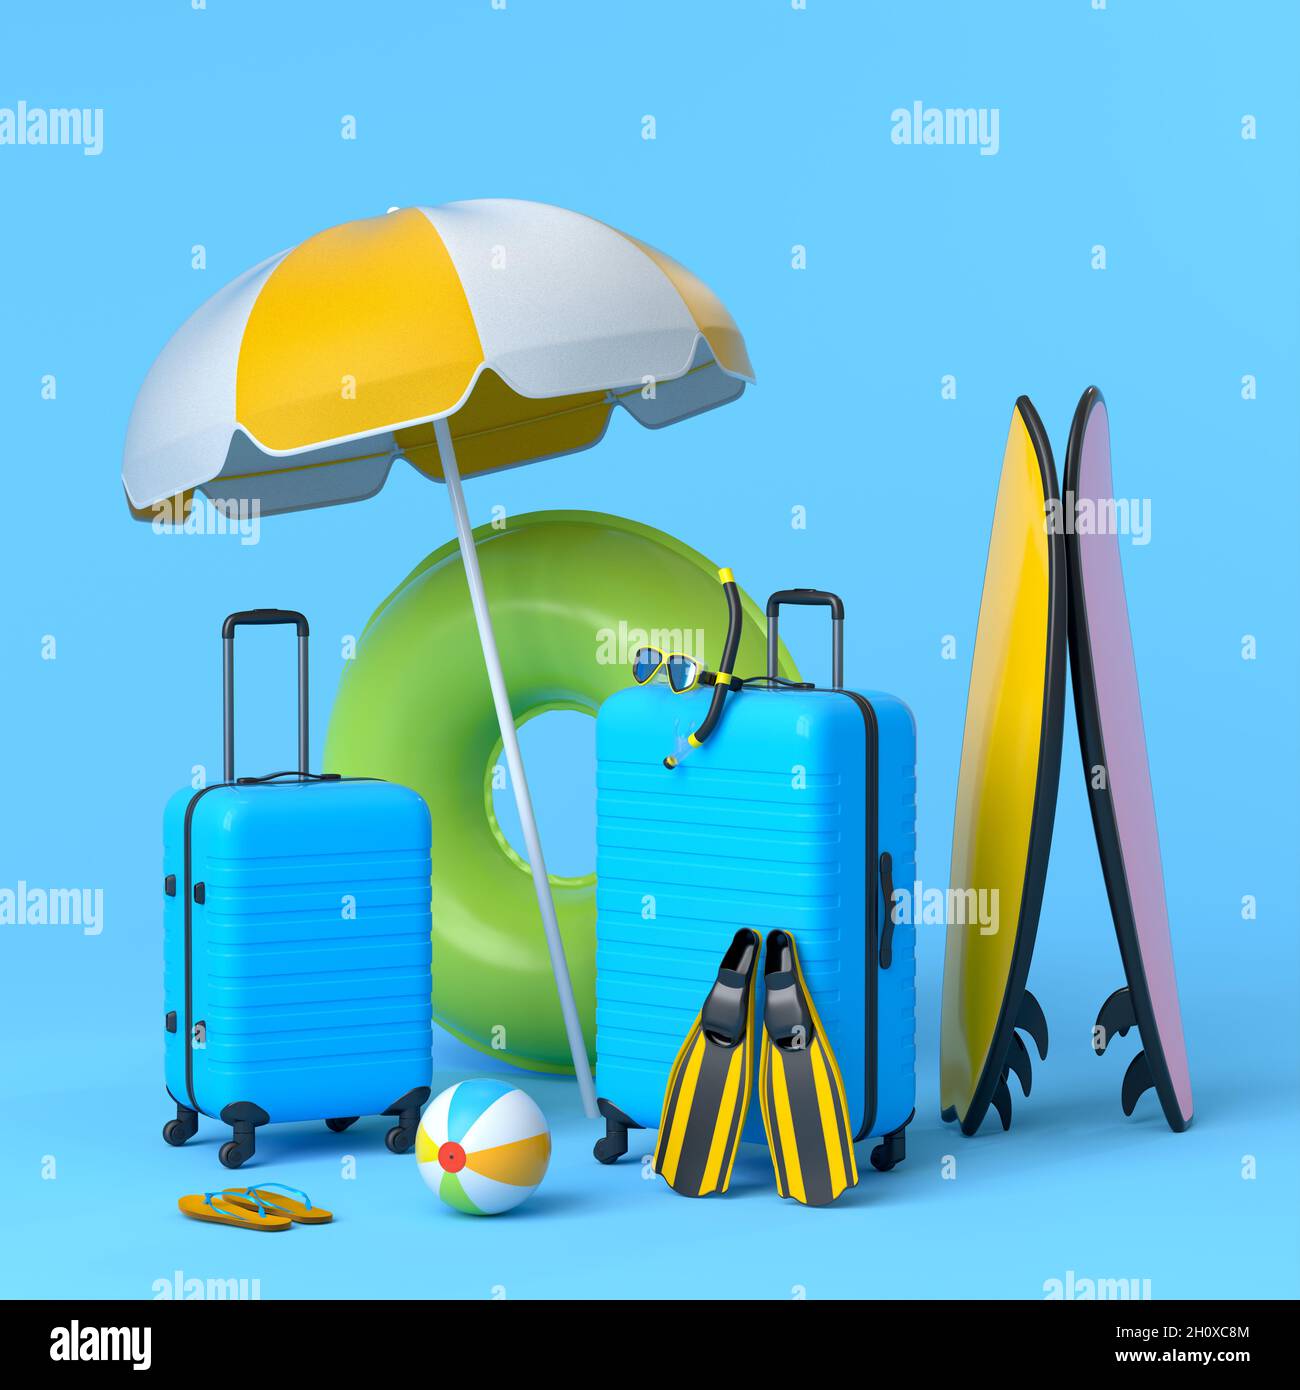 Koffer mit Sonnenschirm und Surfbrett auf blauem Hintergrund  Stockfotografie - Alamy